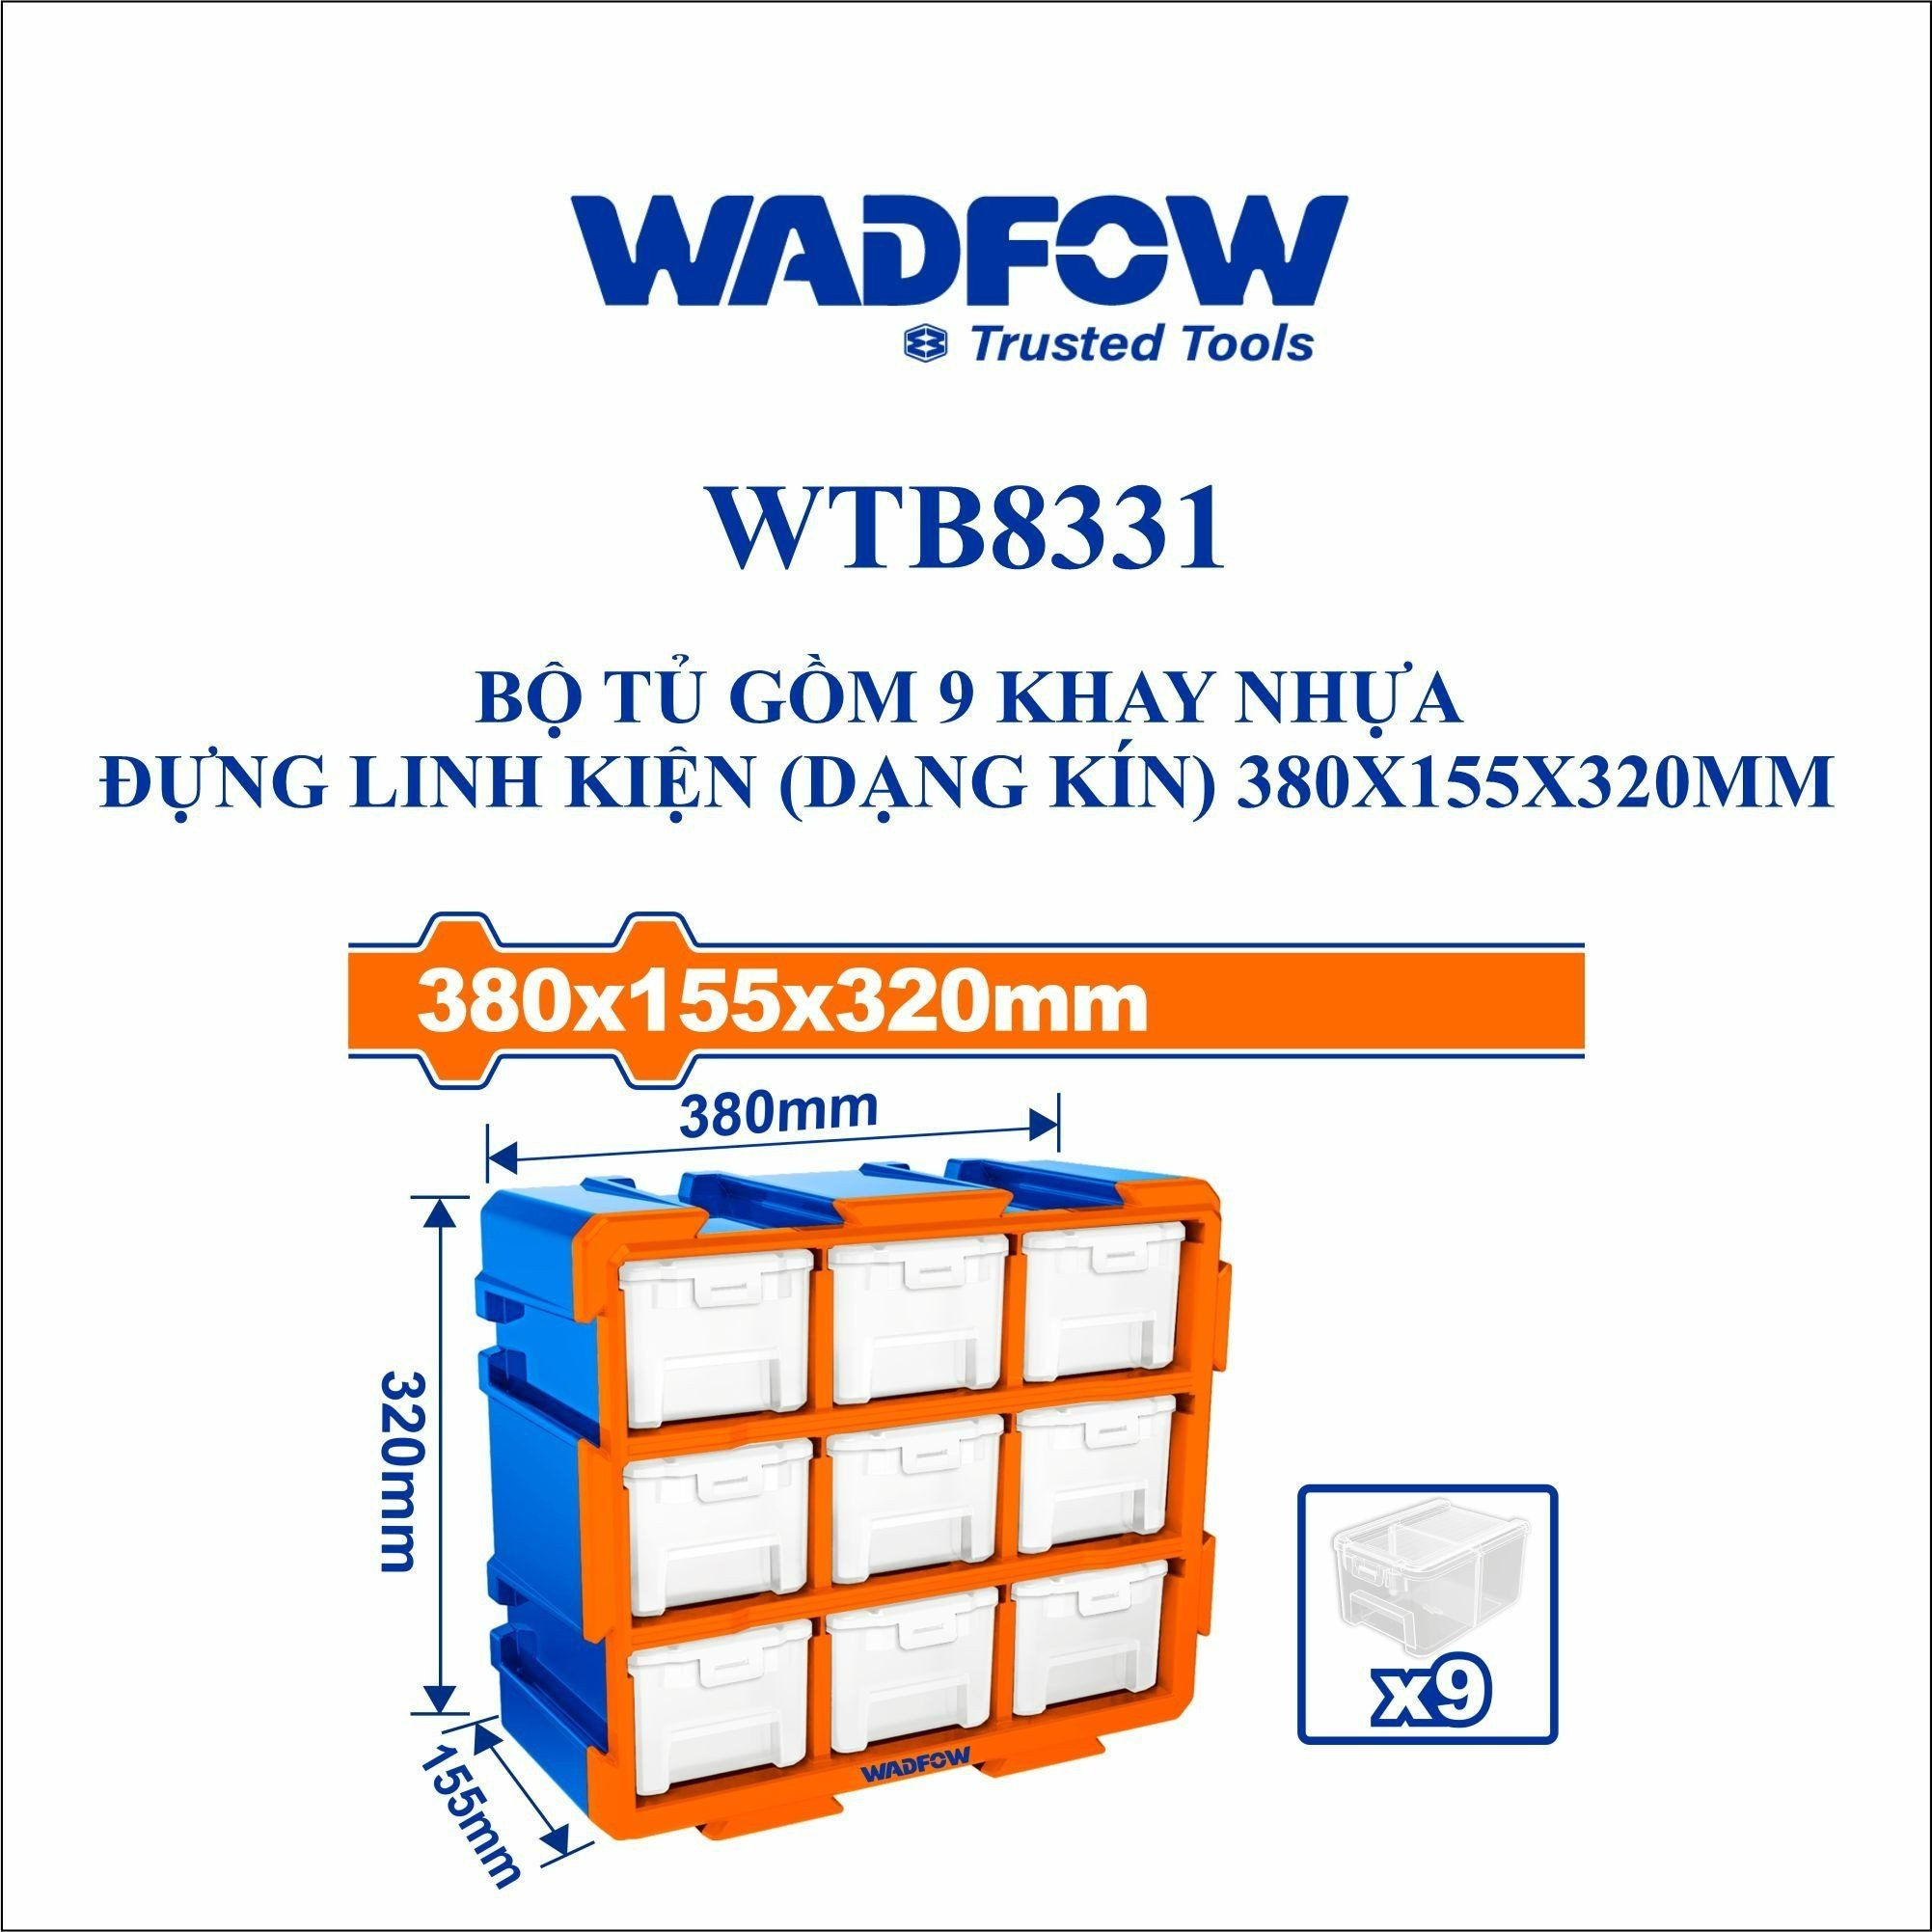  Bộ tủ gồm 9 khay nhựa đựng linh kiện (dạng kín) 380x155x320mm WADFOW WTB8331 